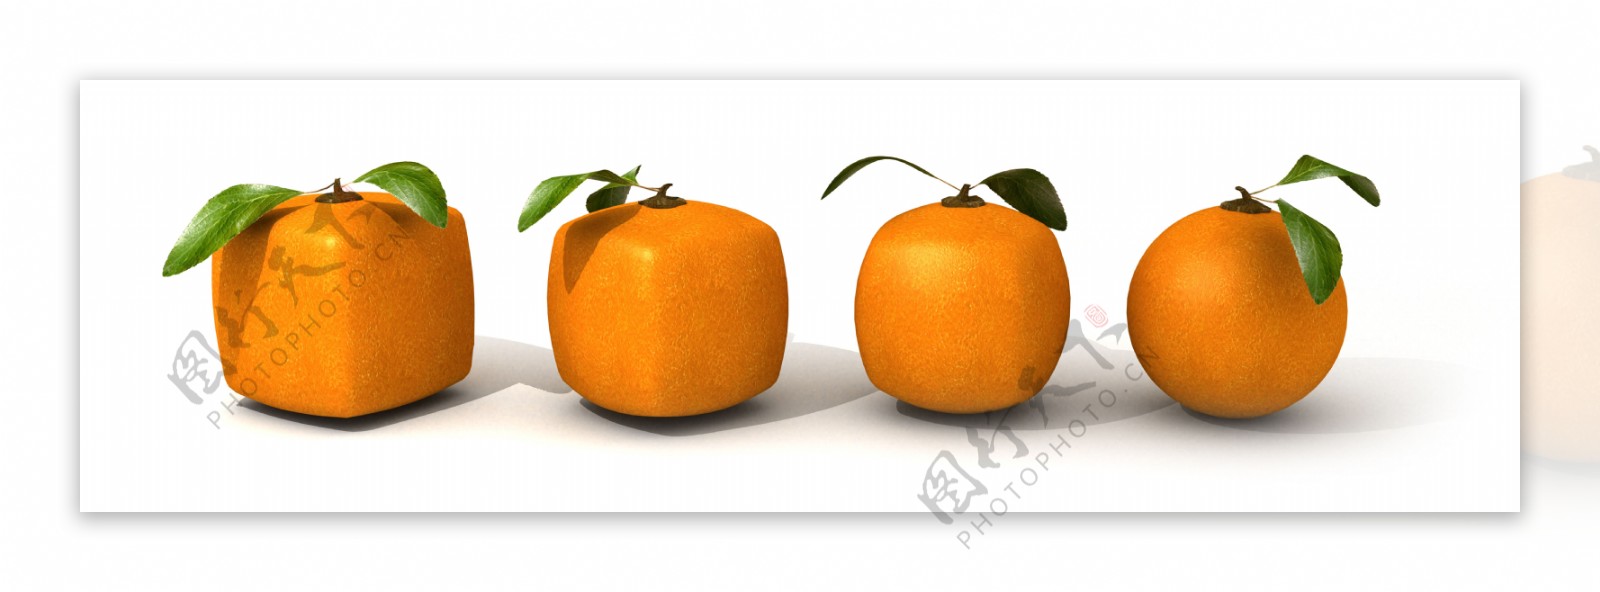 水果图片橘子